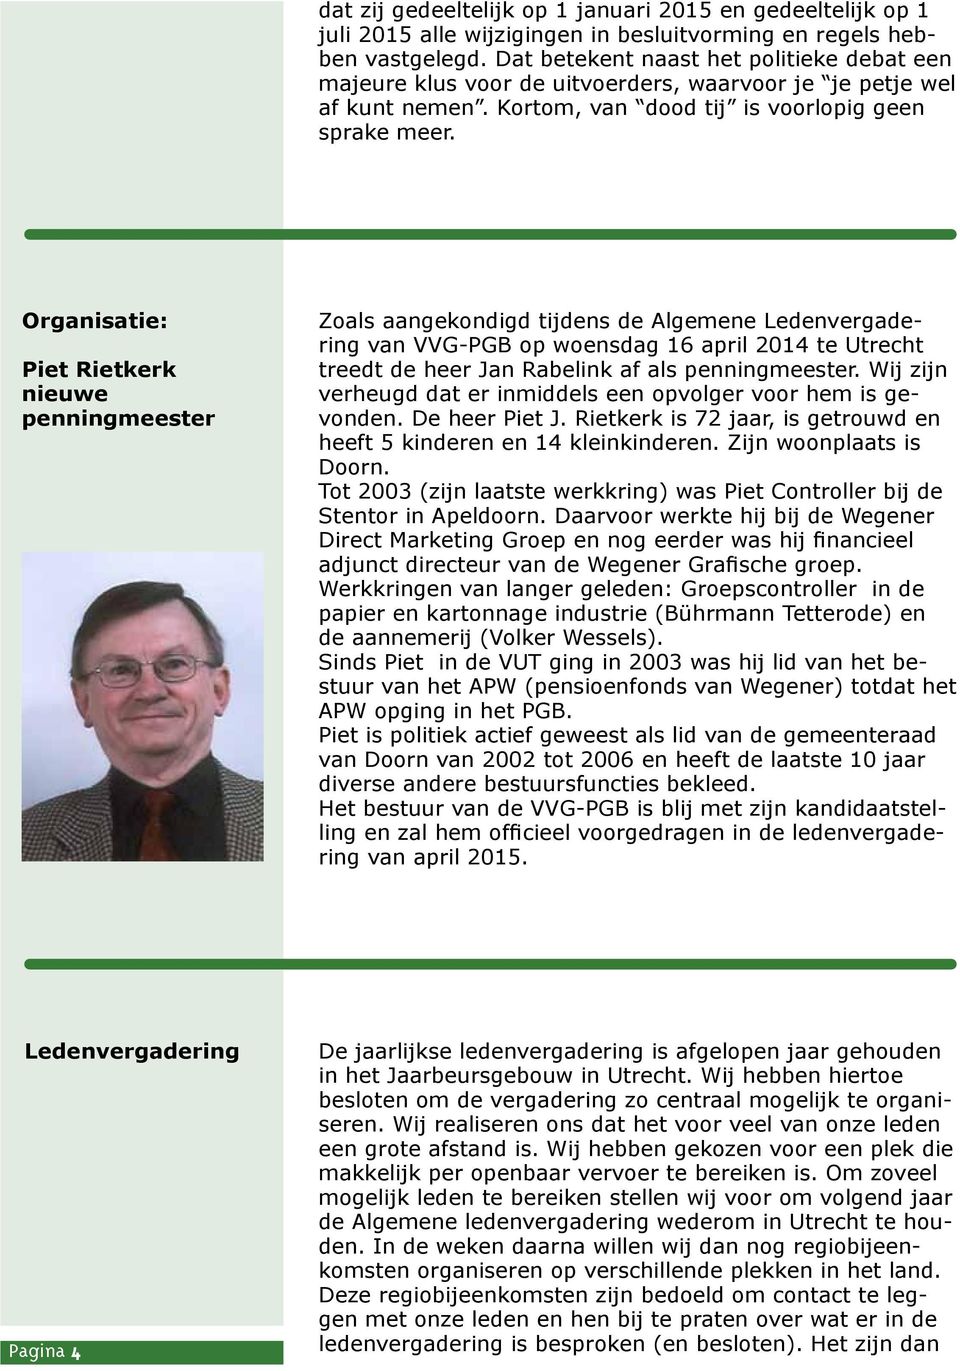 Organisatie: Piet Rietkerk nieuwe penningmeester Zoals aangekondigd tijdens de Algemene Ledenvergadering van VVG-PGB op woensdag 16 april 2014 te Utrecht treedt de heer Jan Rabelink af als